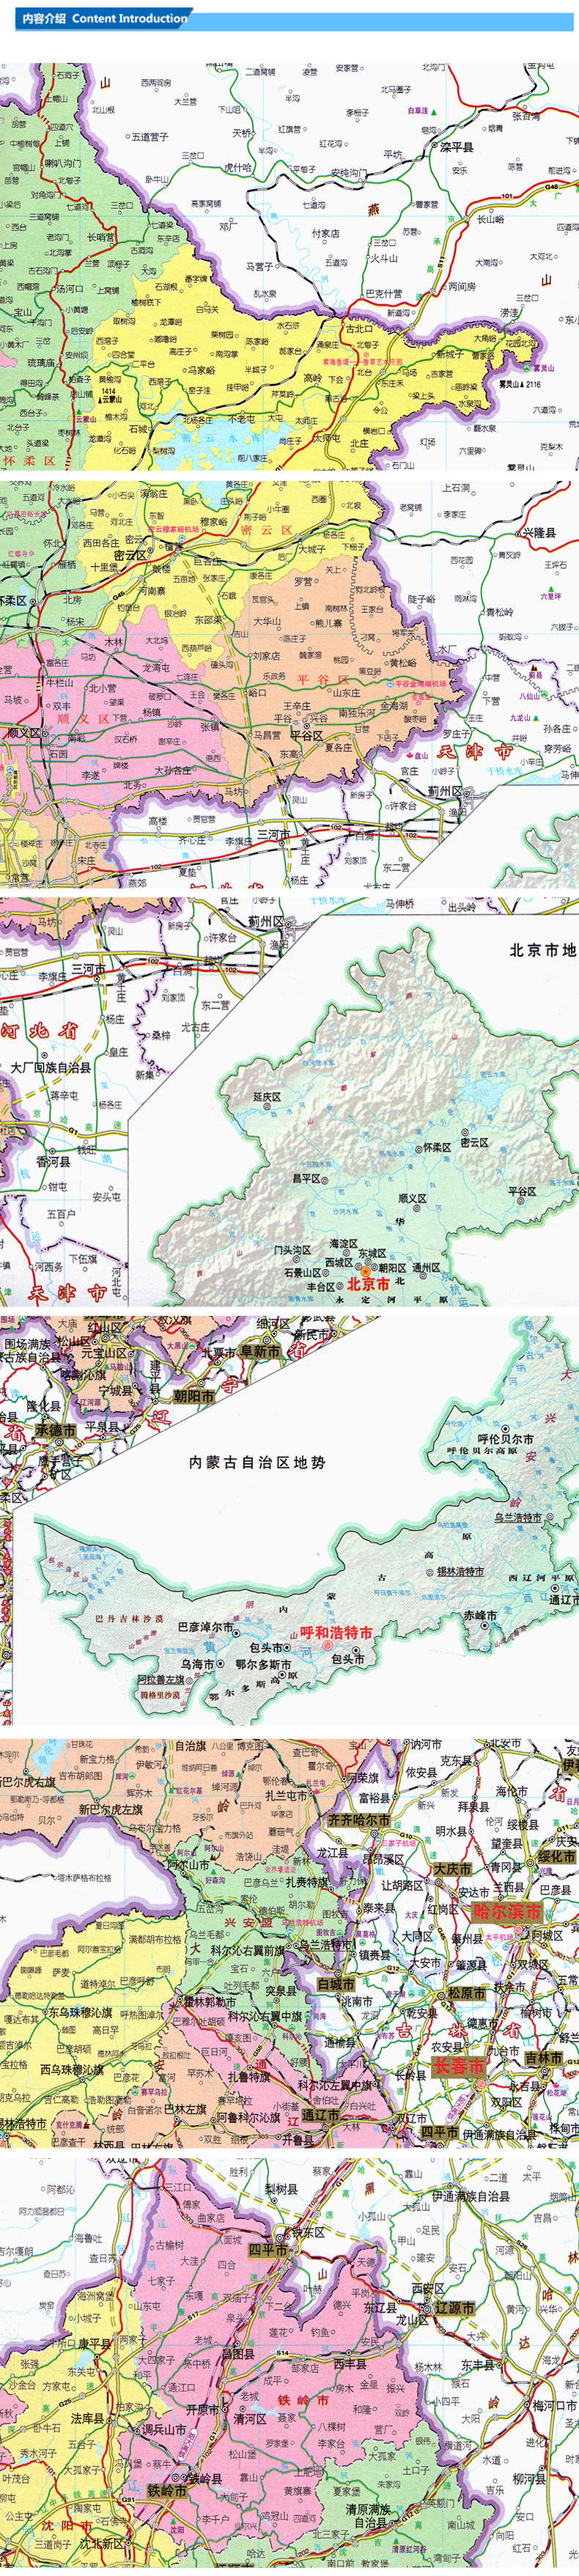 大字版 中国地图册 政区 8开 全新地图内容排版 大字清晰易读的地图 3